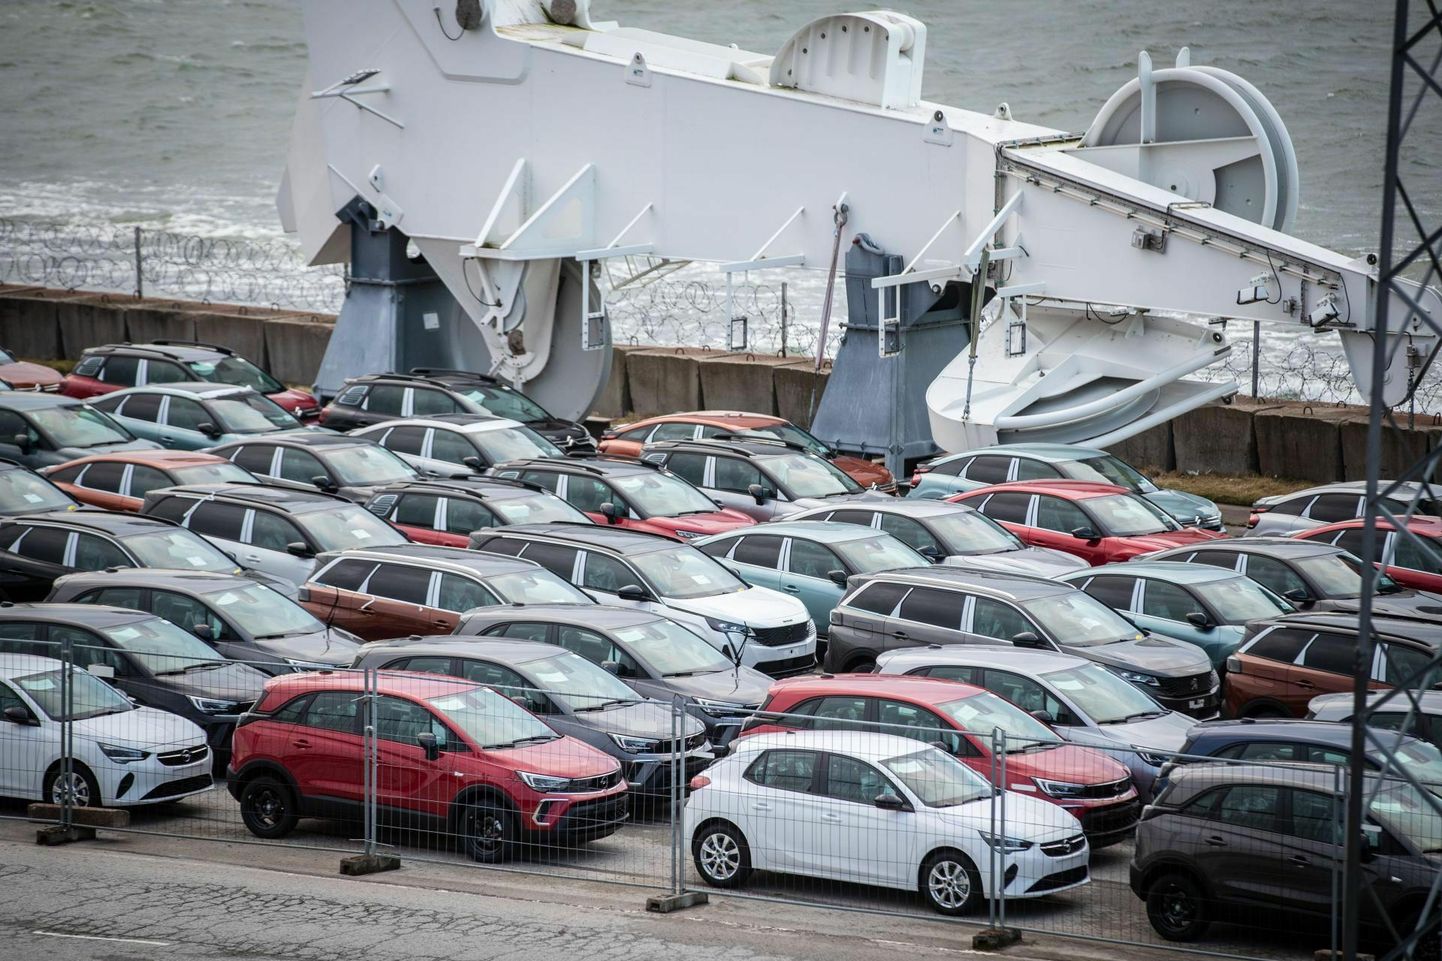 Automüüjad eeldavad, et enne sõiduki registreerimismaksu jõustumist püüavad võimalikult paljud endale auto ära osta, mistõttu on automüüjate laod praegu pilgeni täis. Fotol Eestisse jõudnud autod Paldiski sadamas.